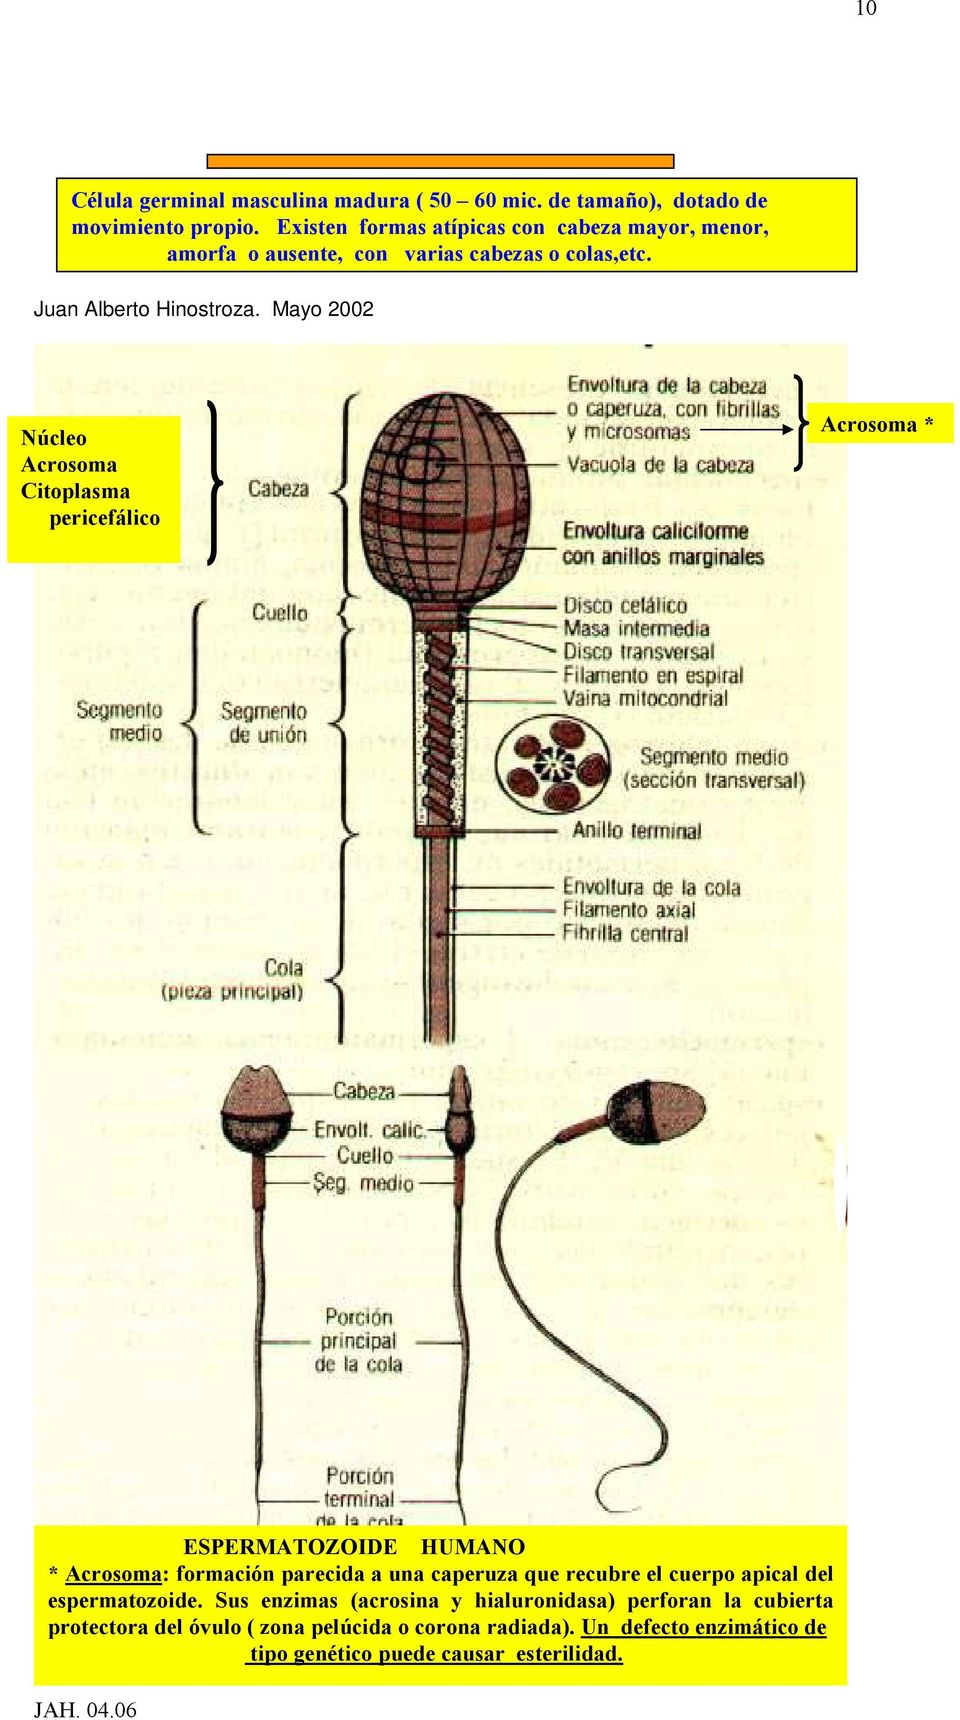 Mayo 2002 Núcleo Acrosoma Citoplasma pericefálico Acrosoma * ESPERMATOZOIDE HUMANO * Acrosoma: formación parecida a una caperuza que recubre el